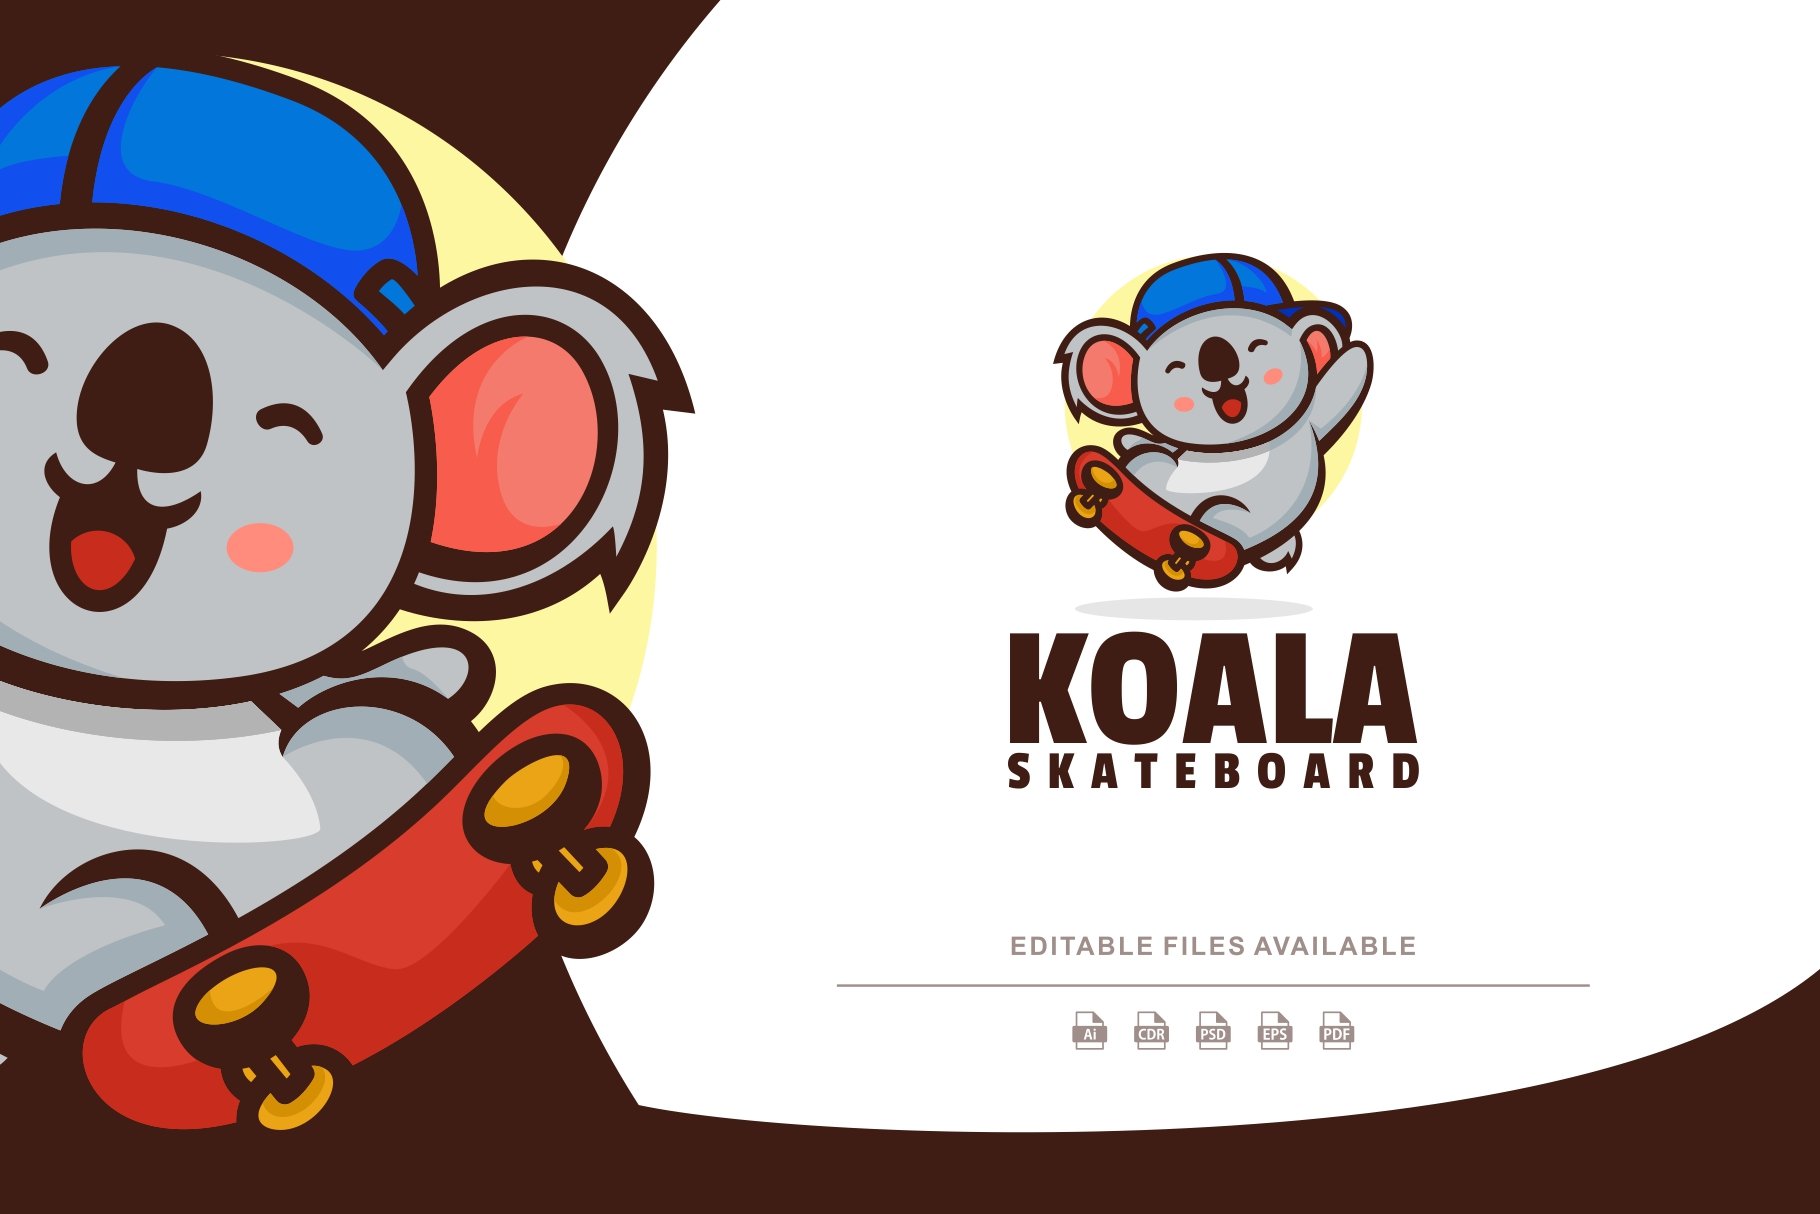 Koala Skateboard Mascot Cartoon Logo cover image.